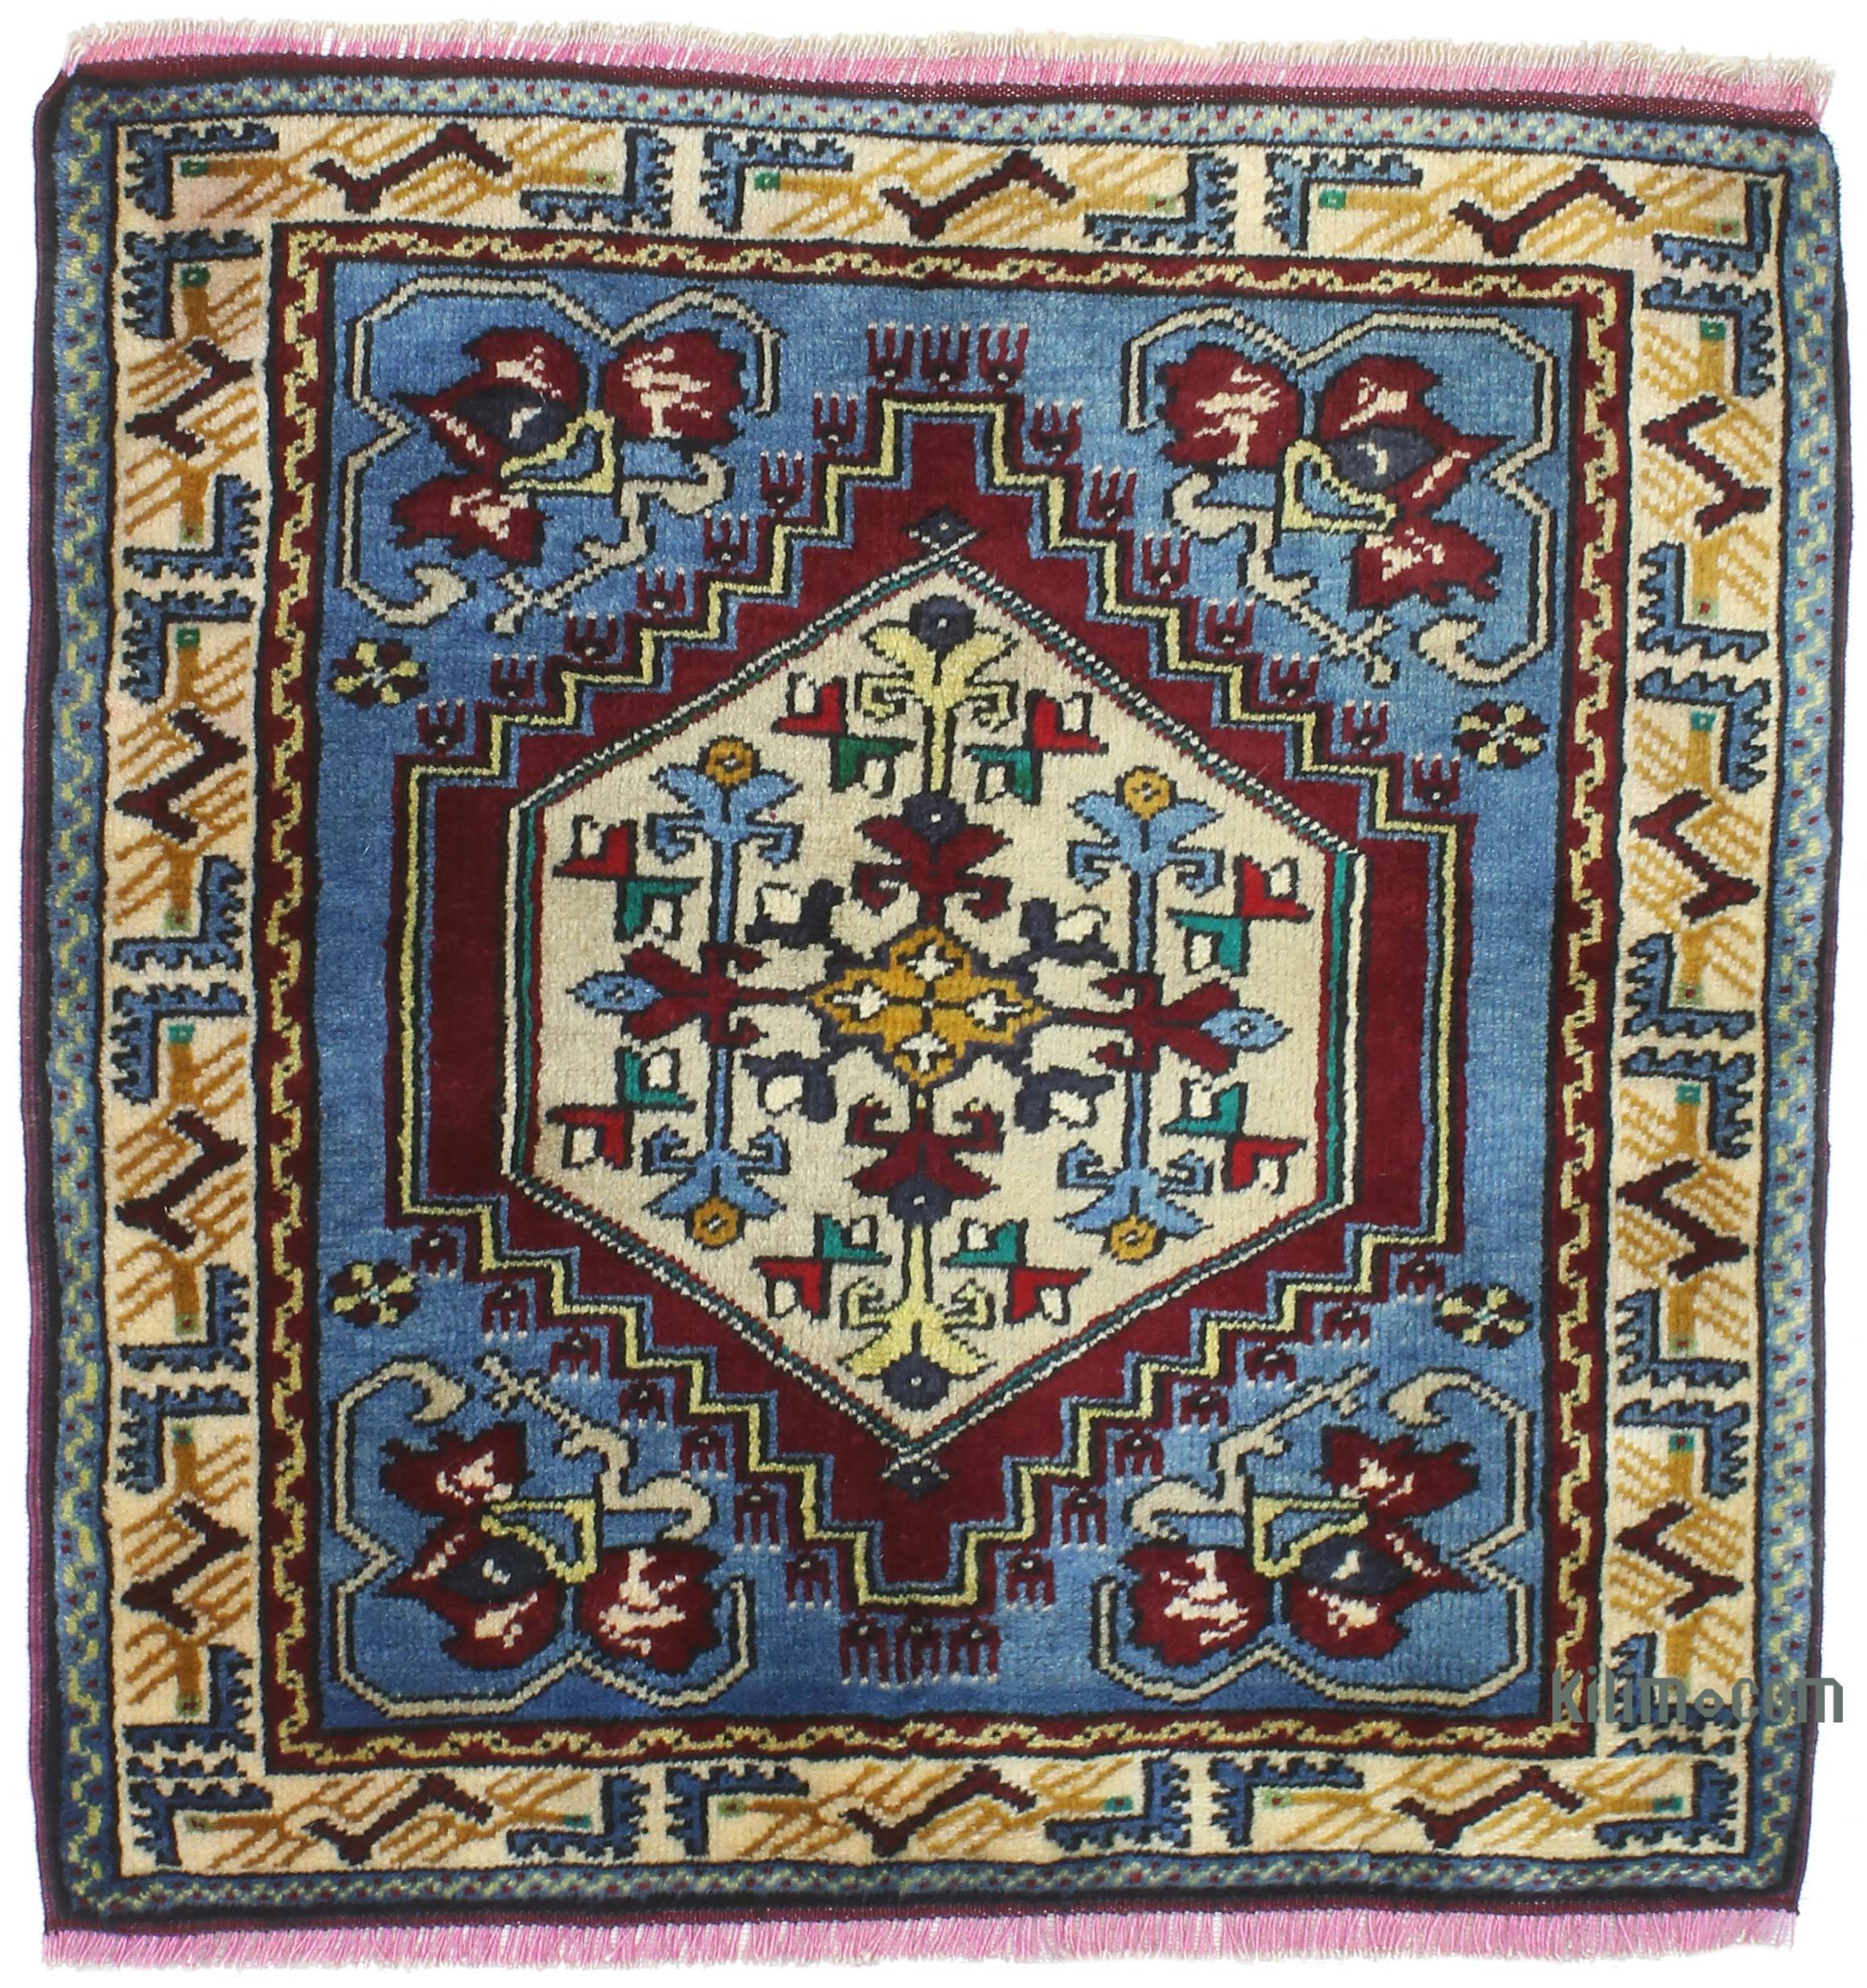  Alfombras antiguas, alfombras turcas, alfombras